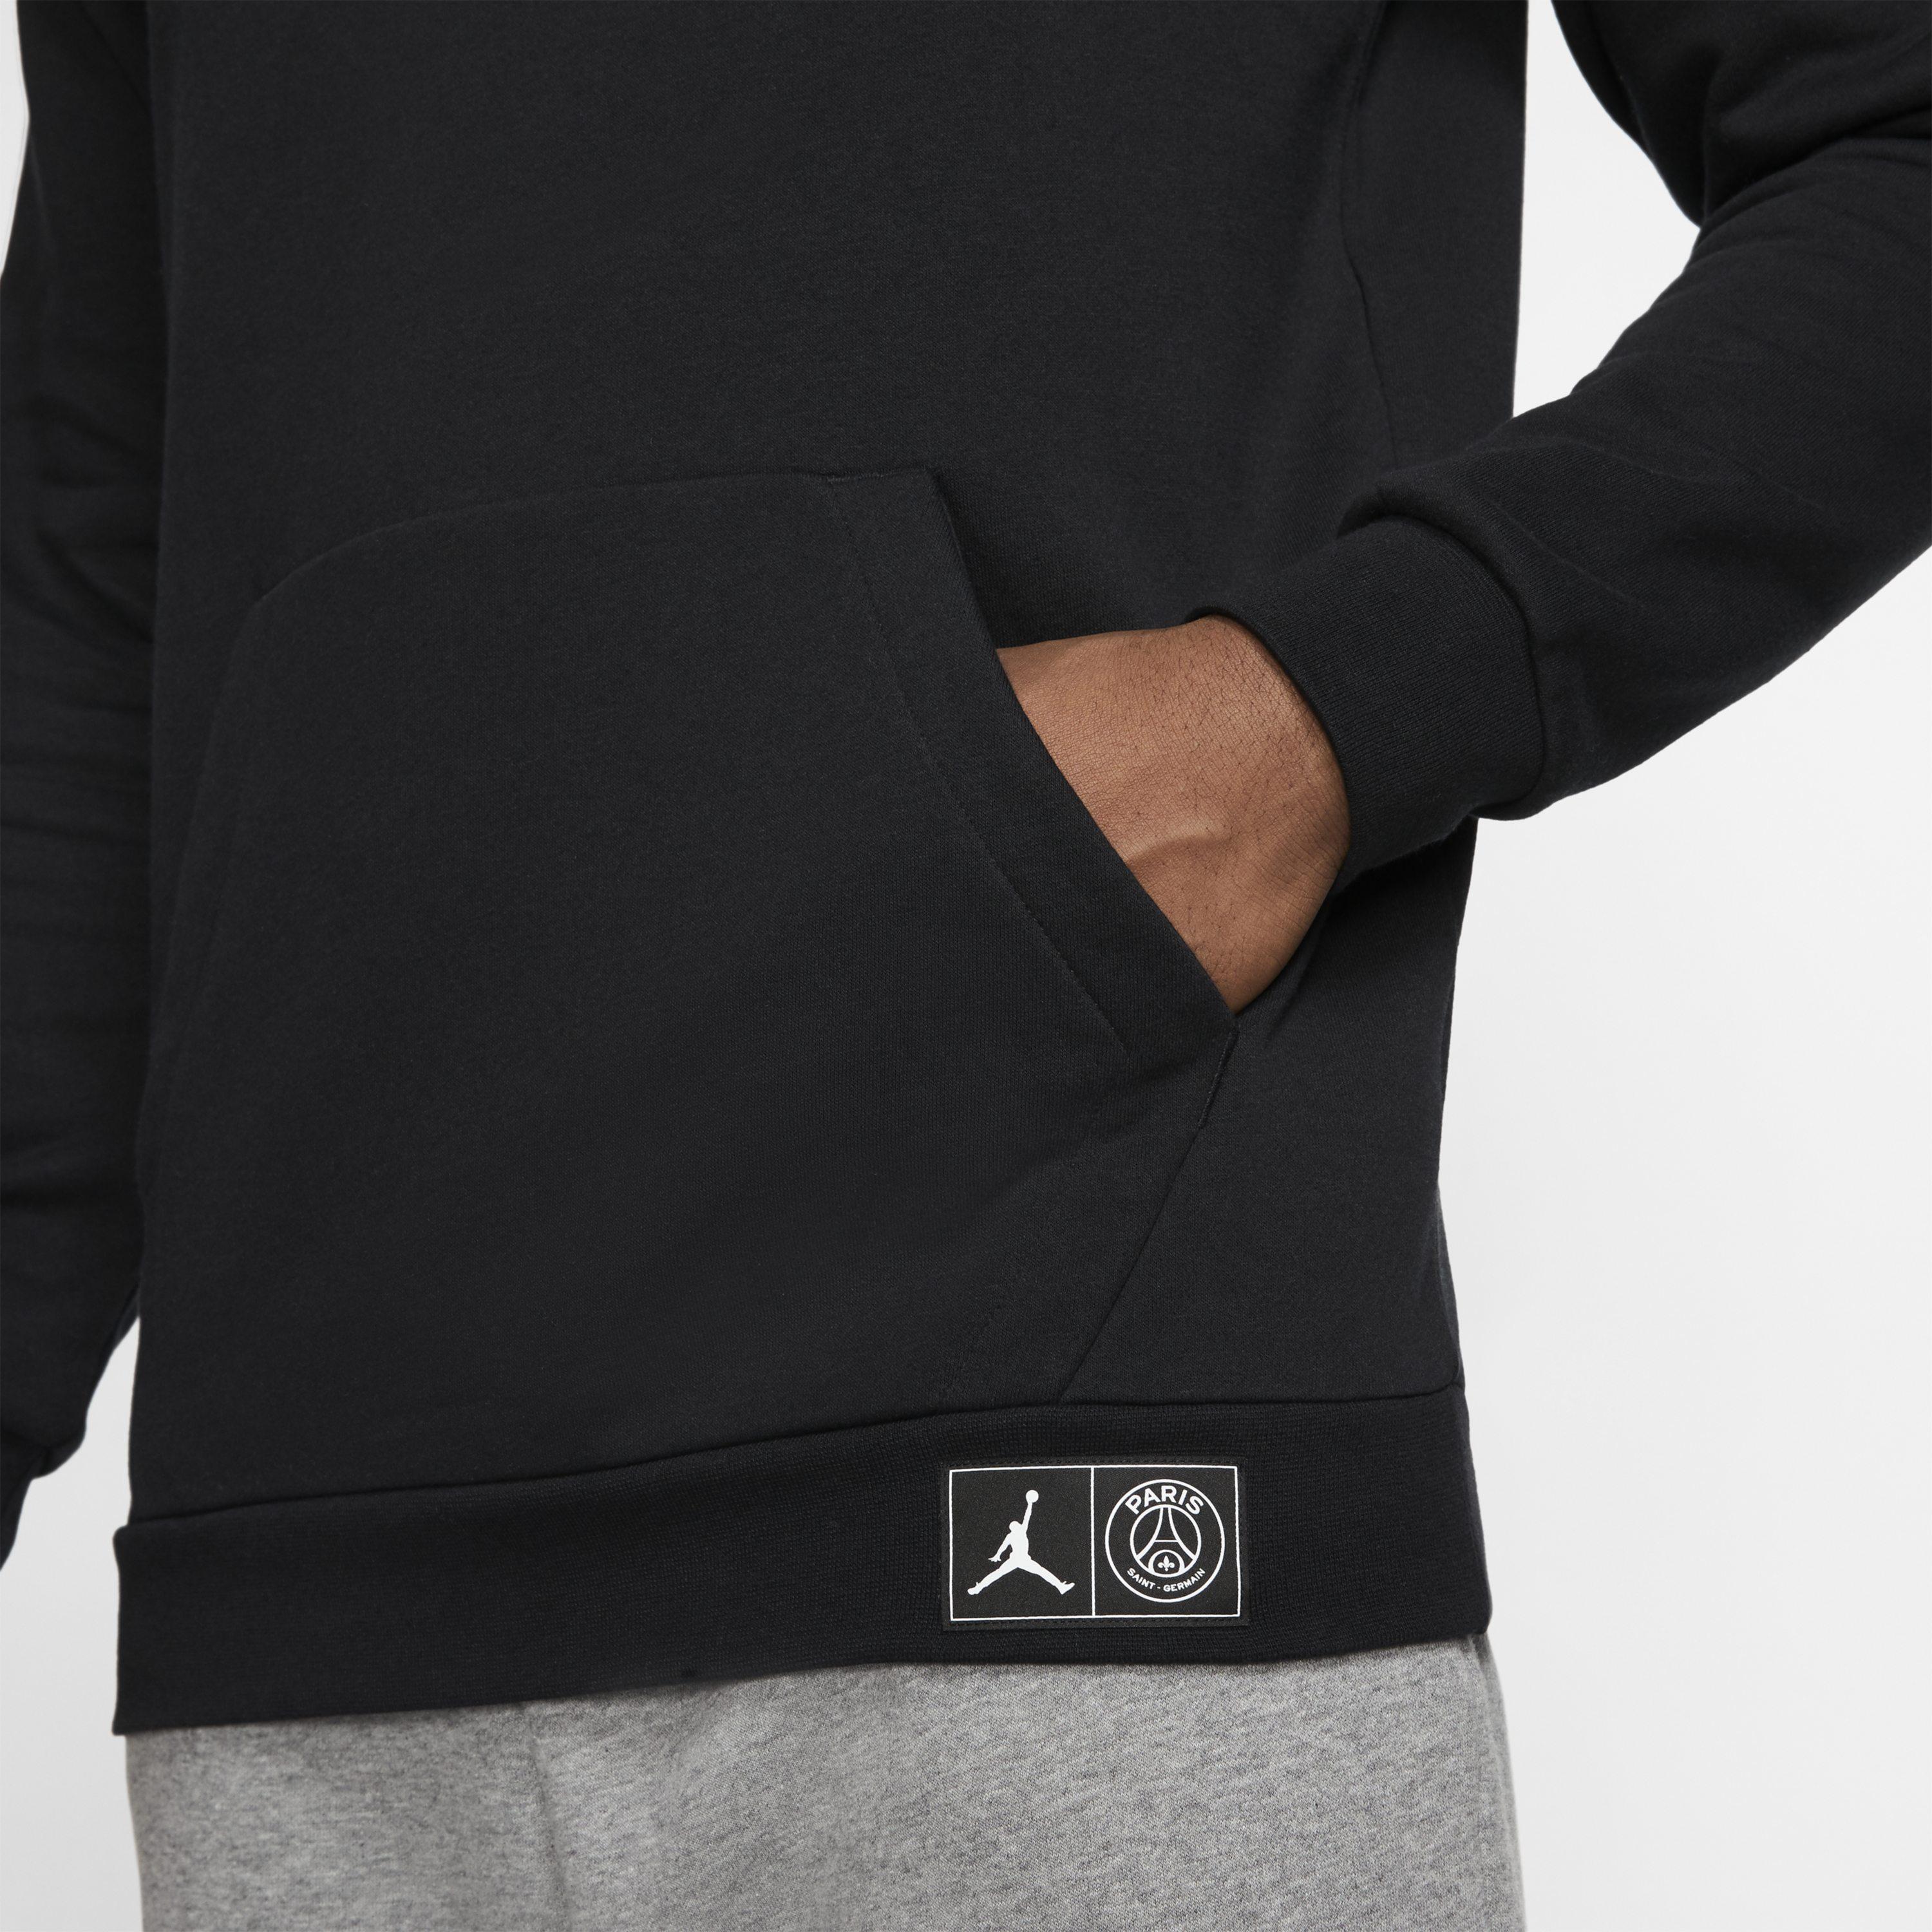 Nike Paris Saint-germain Fleece Pullover Hoodie in Black for Men - Lyst